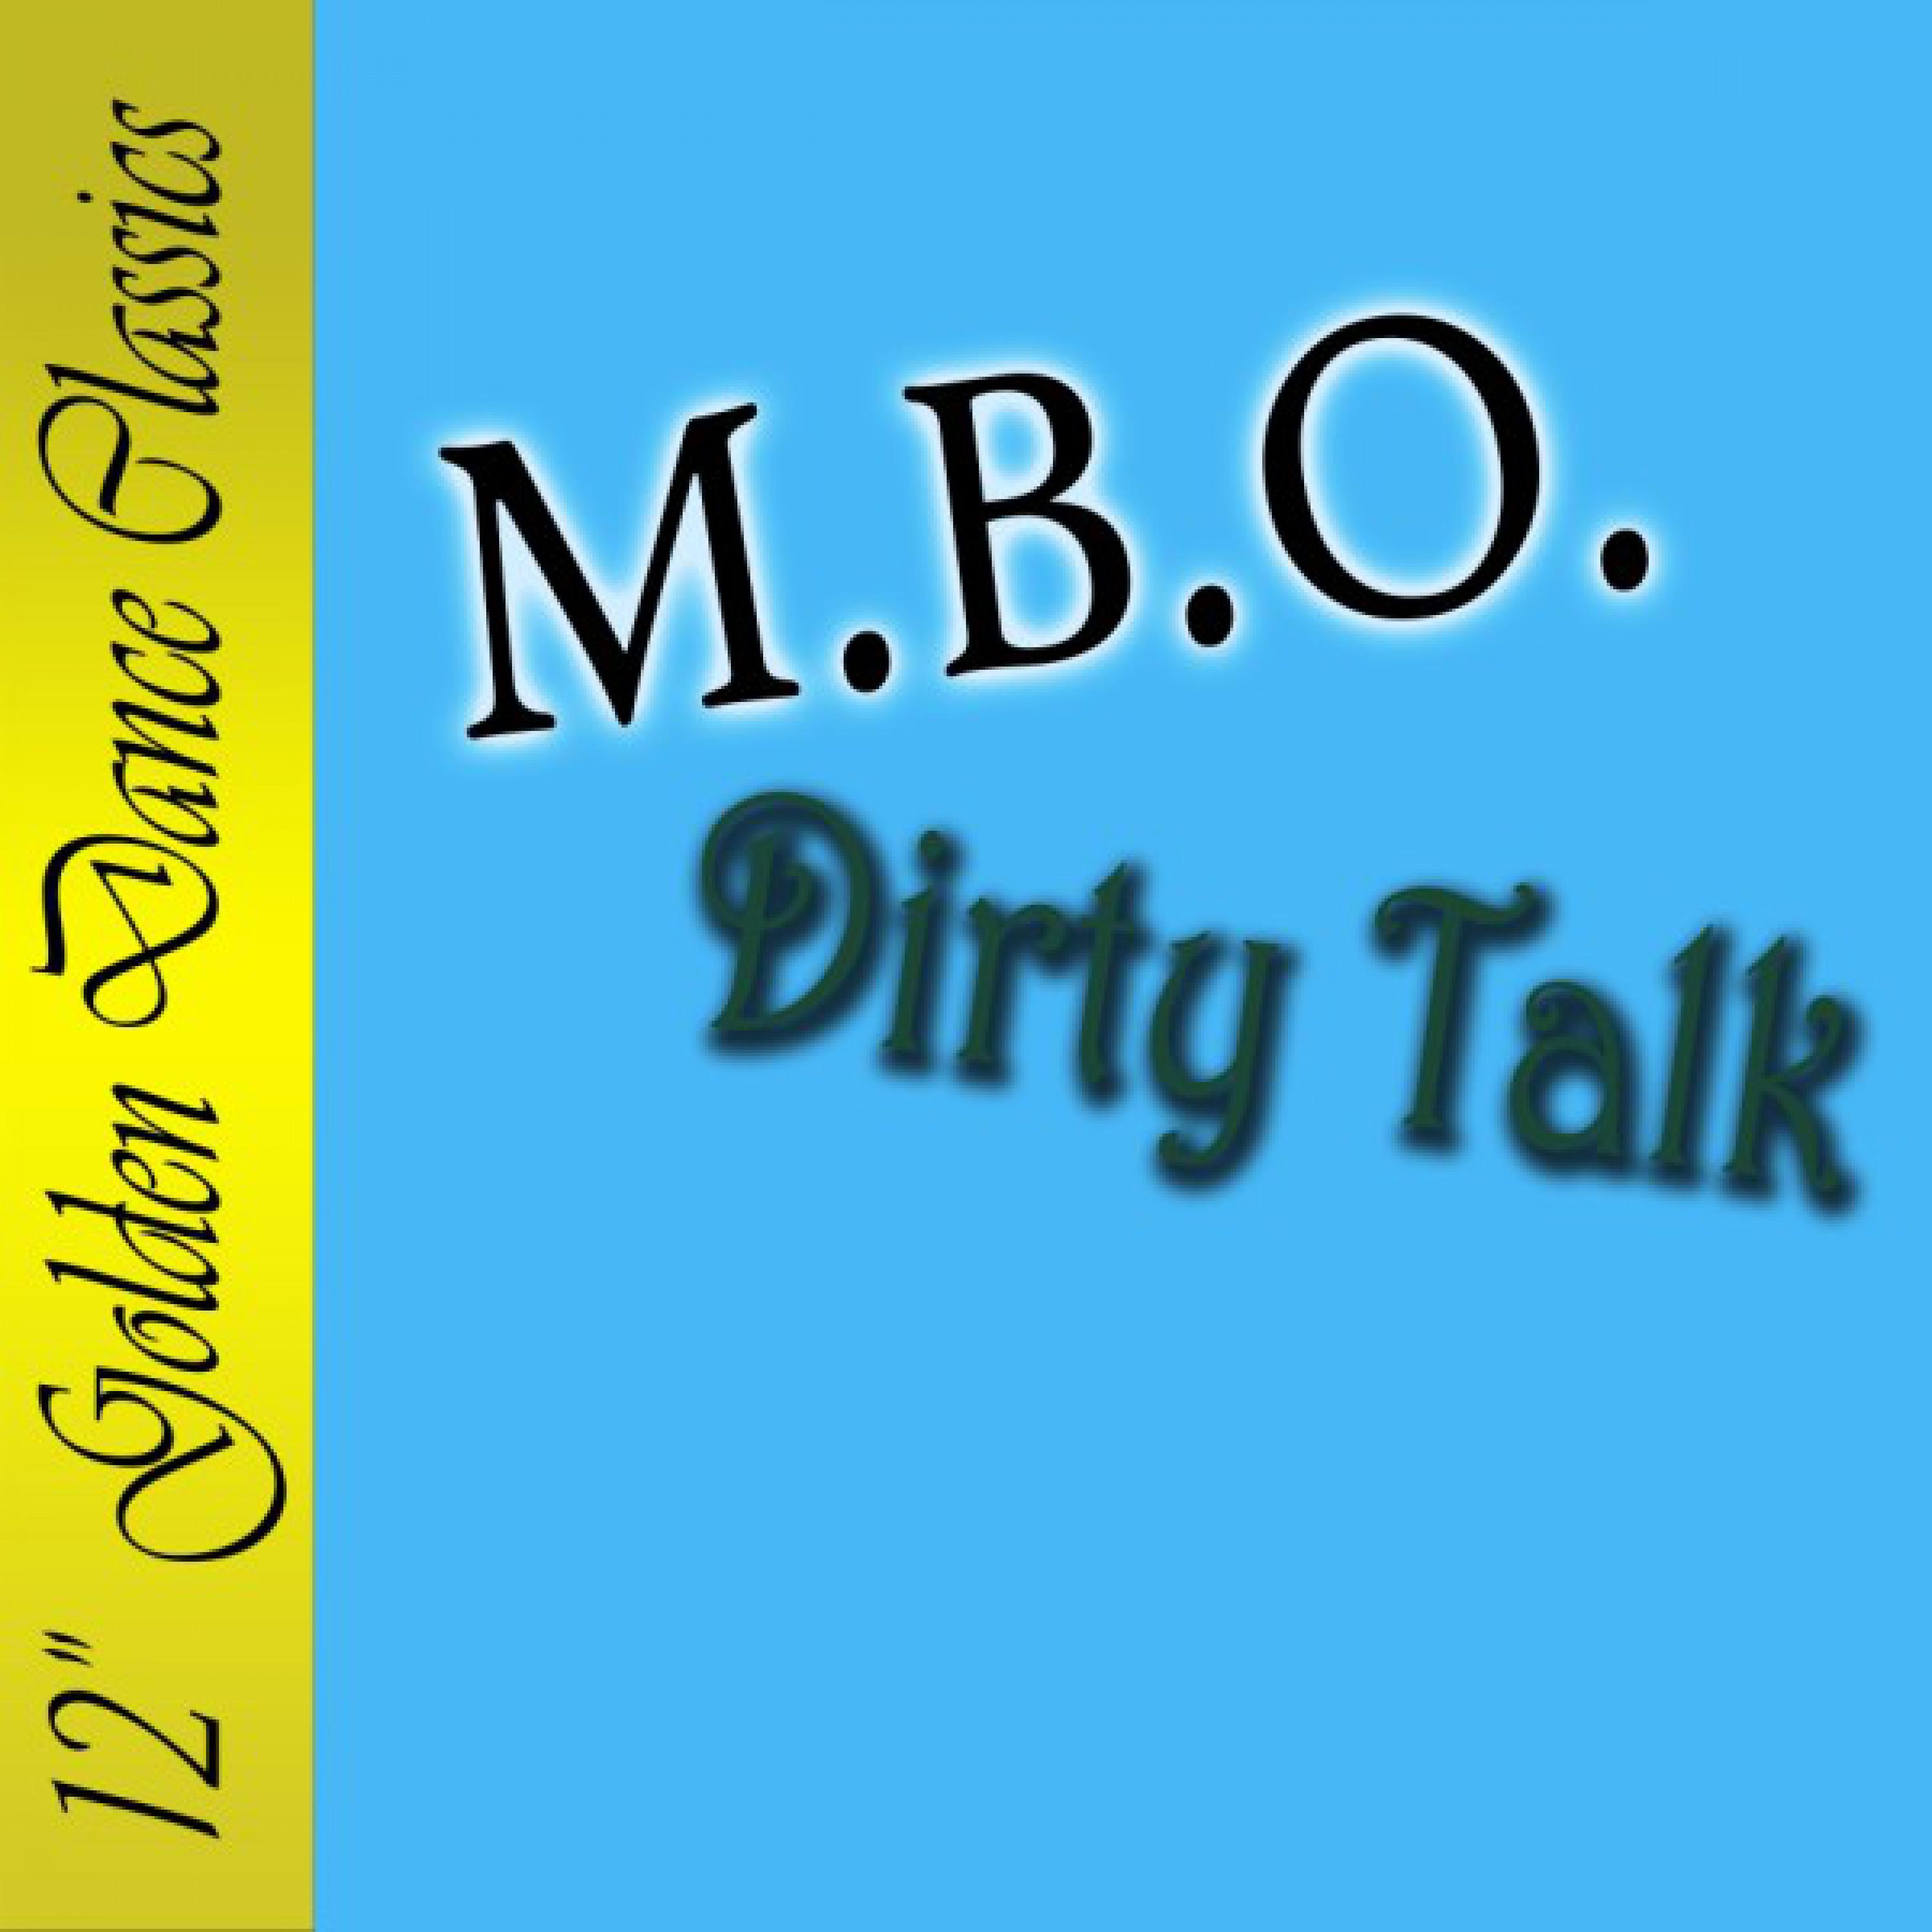 Dirty Talk "2002" (Radio Version)